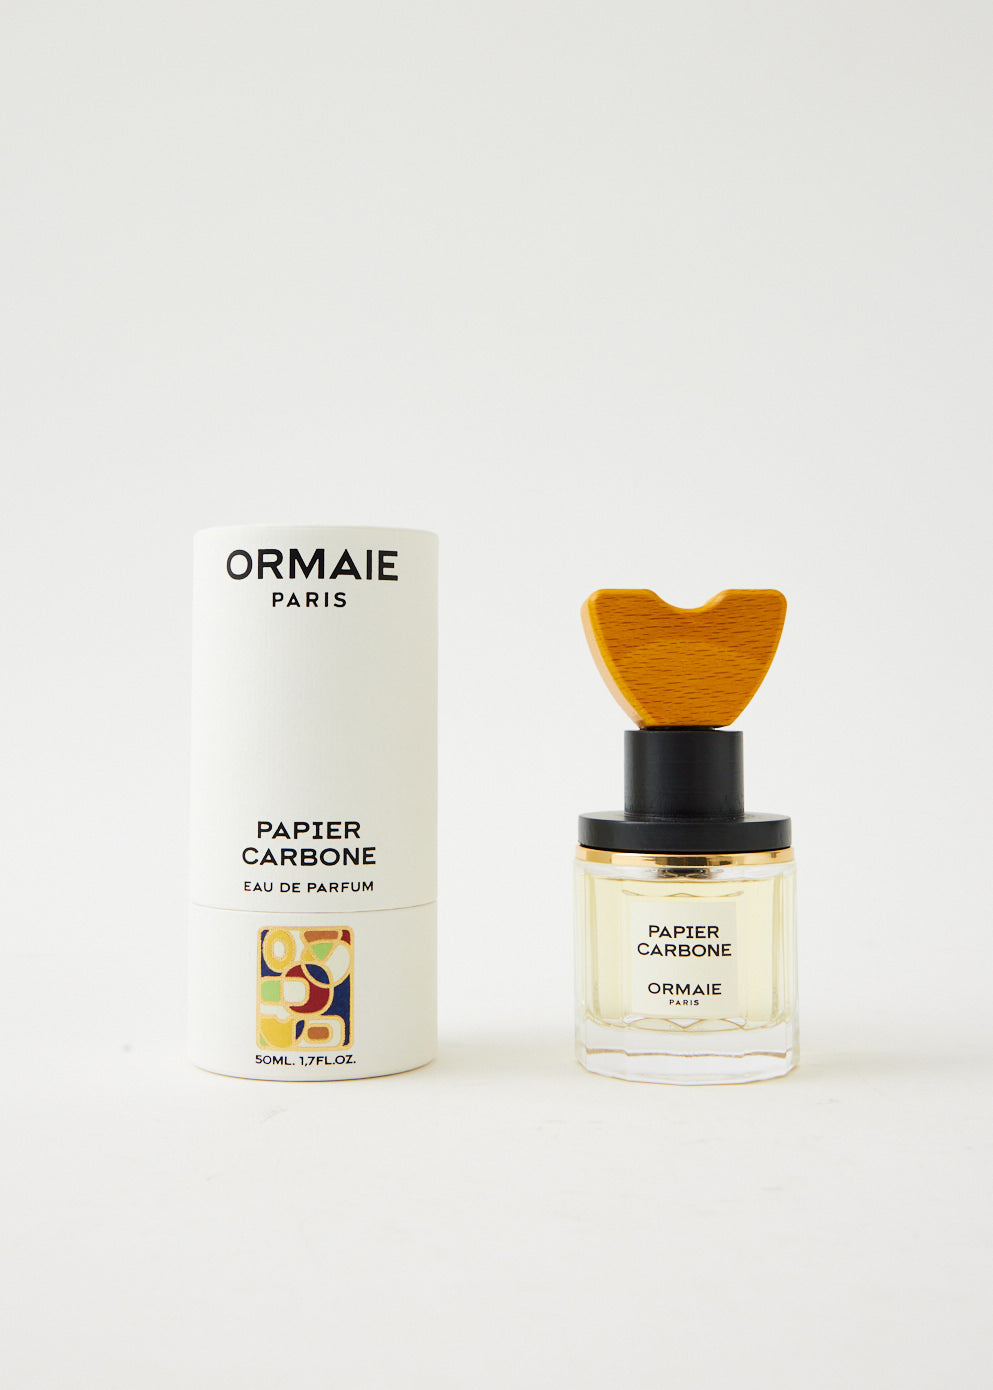 ORMAIE PAPIER CARBONE Eau de Parfum